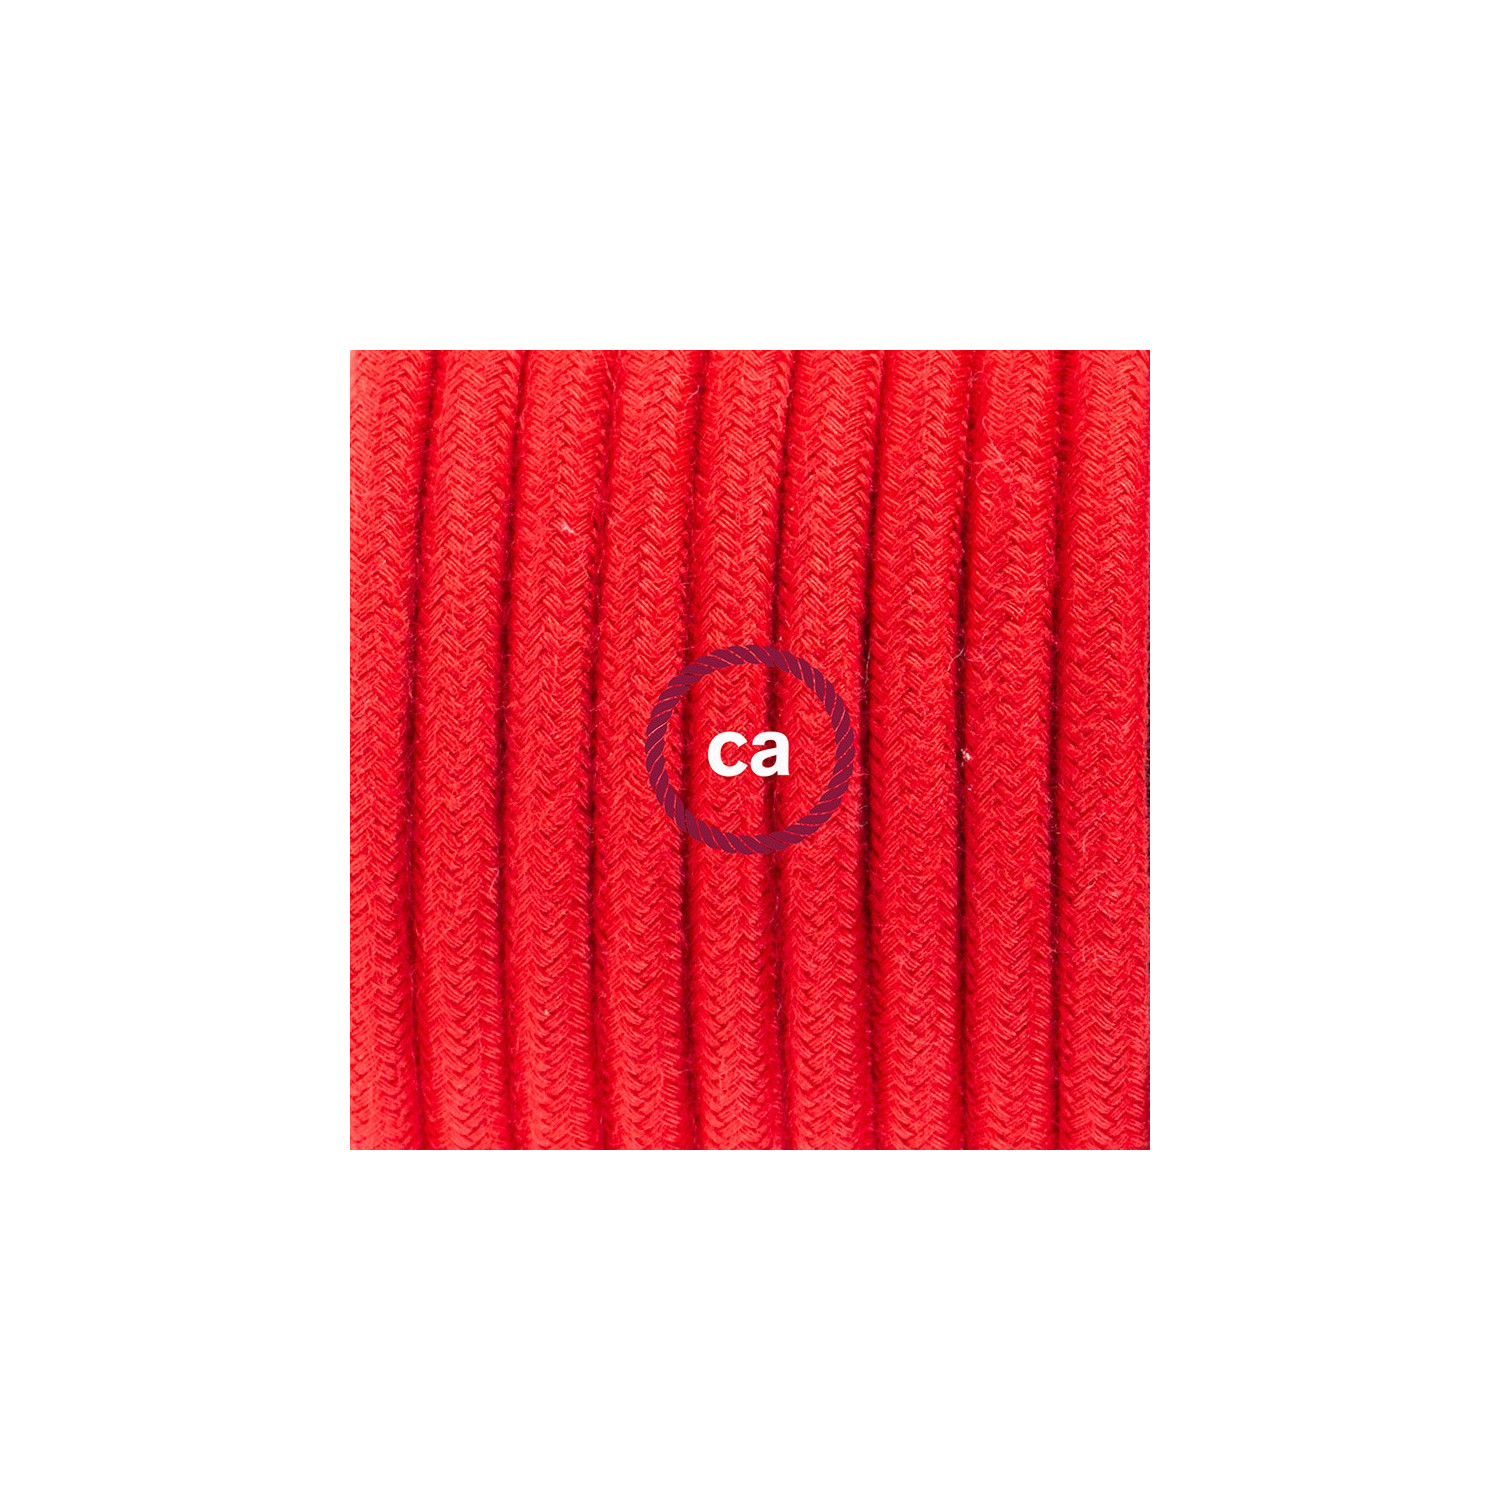 Cablaggio per piantana, cavo RC35 Cotone Rosso Fuoco 3 m. Scegli il colore dell'interruttore e della spina.